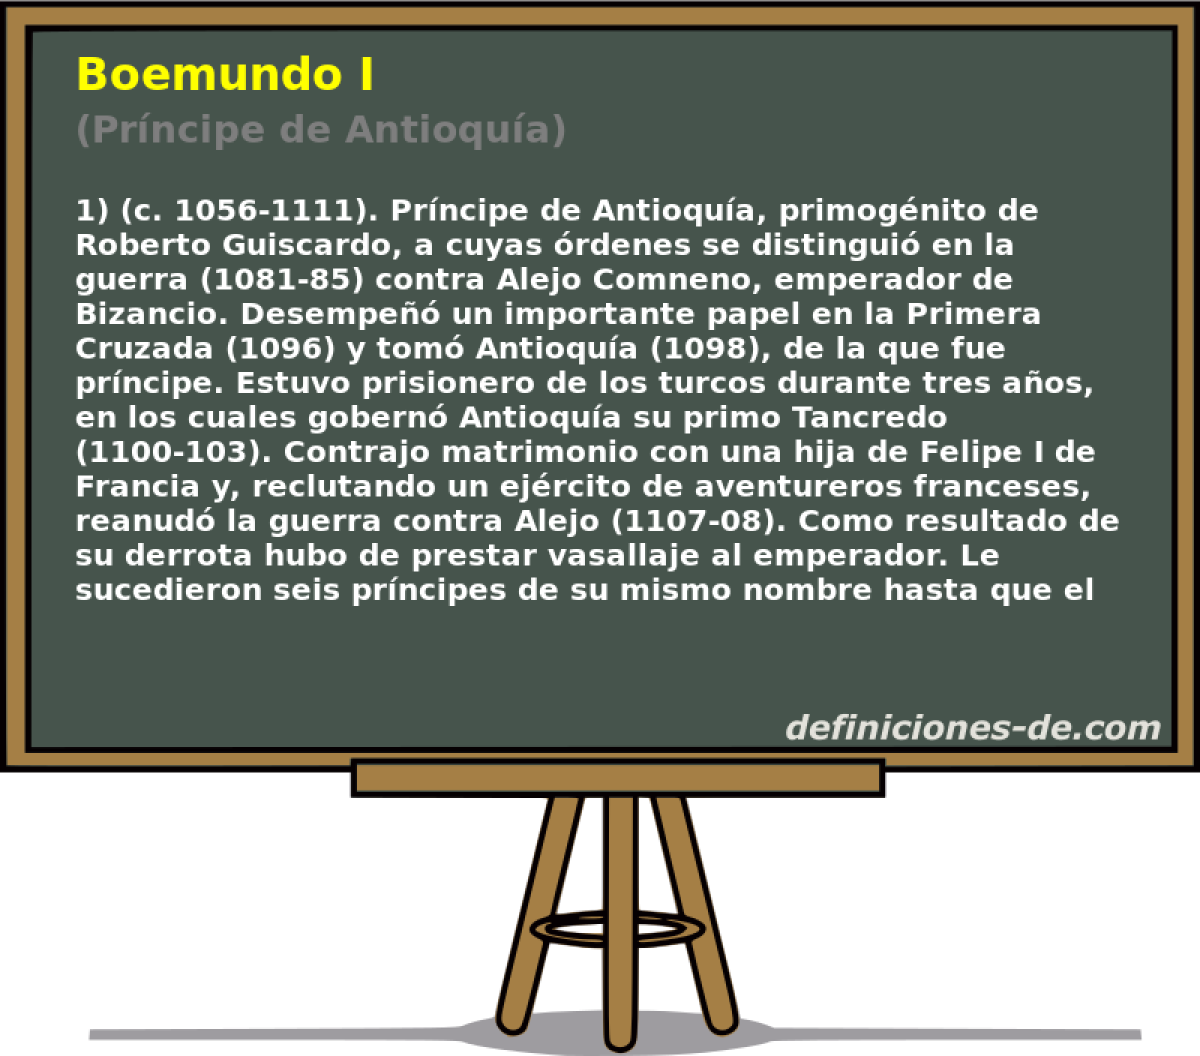 Boemundo I (Prncipe de Antioqua)